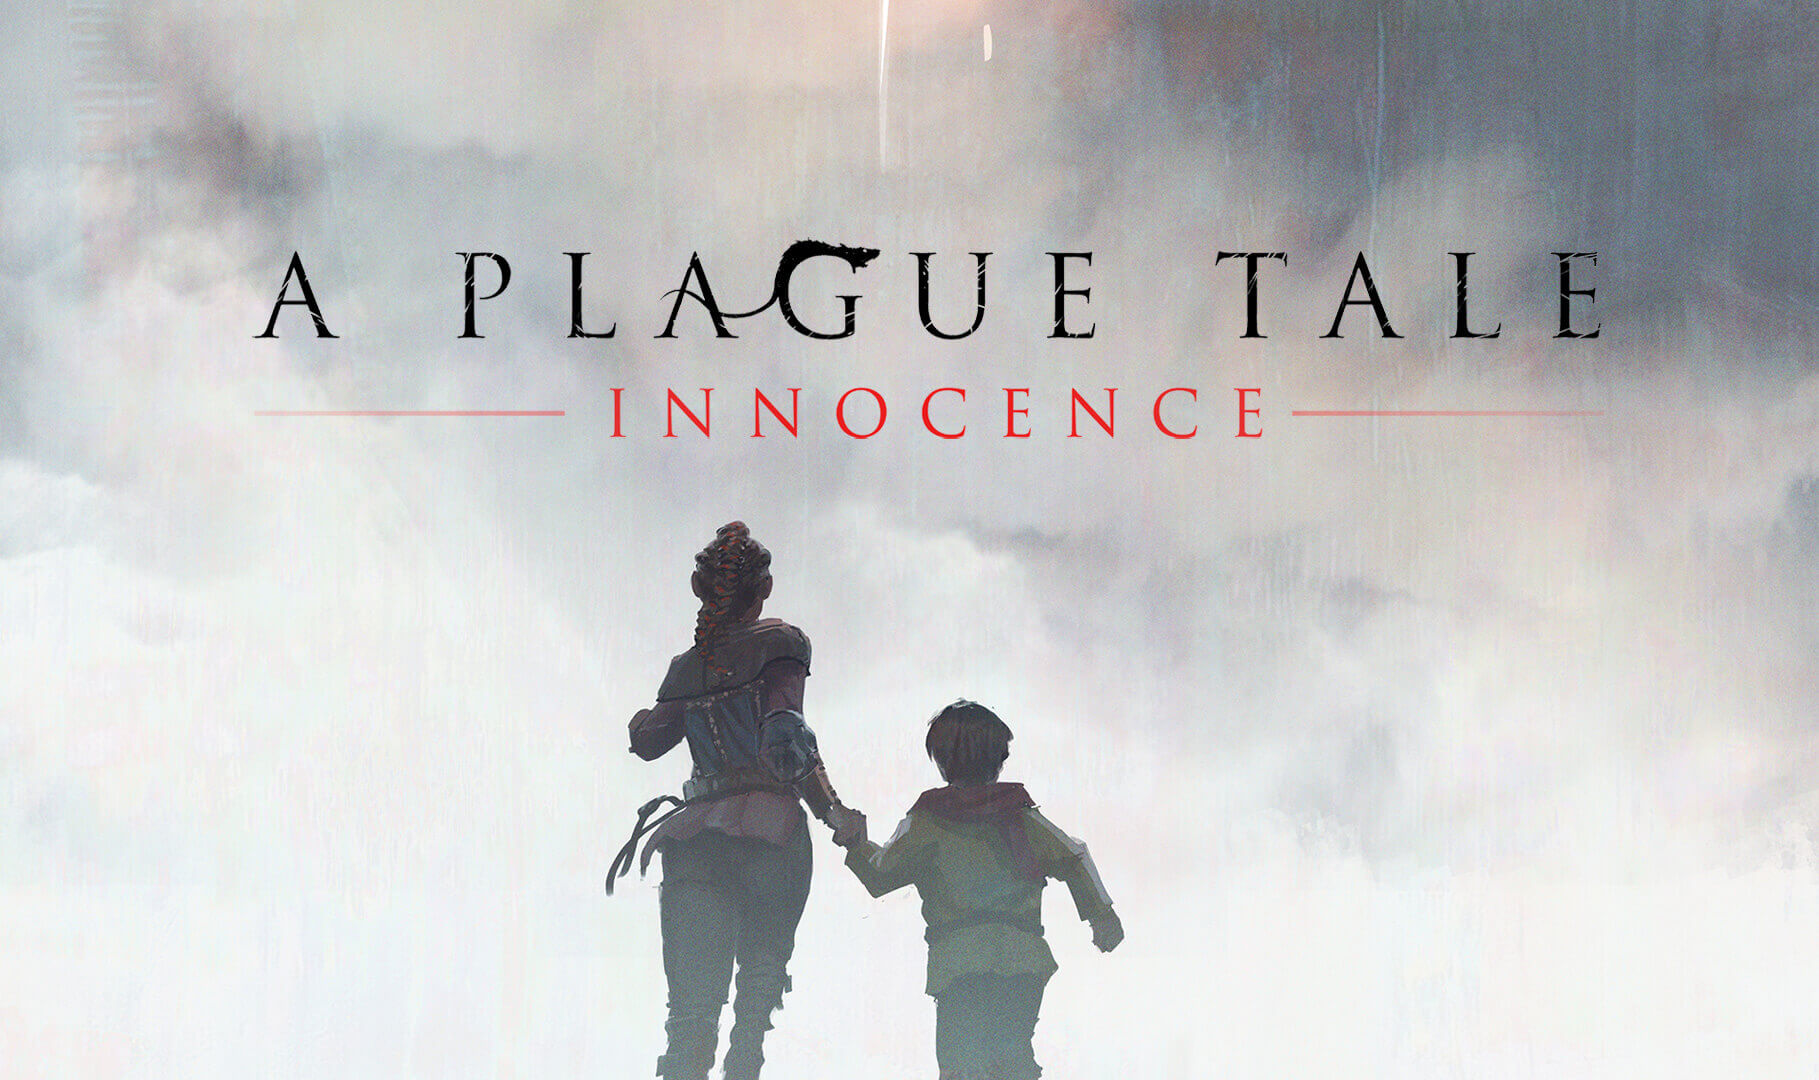 Análise  A Plague Tale: Innocence é trama linear no pior momento